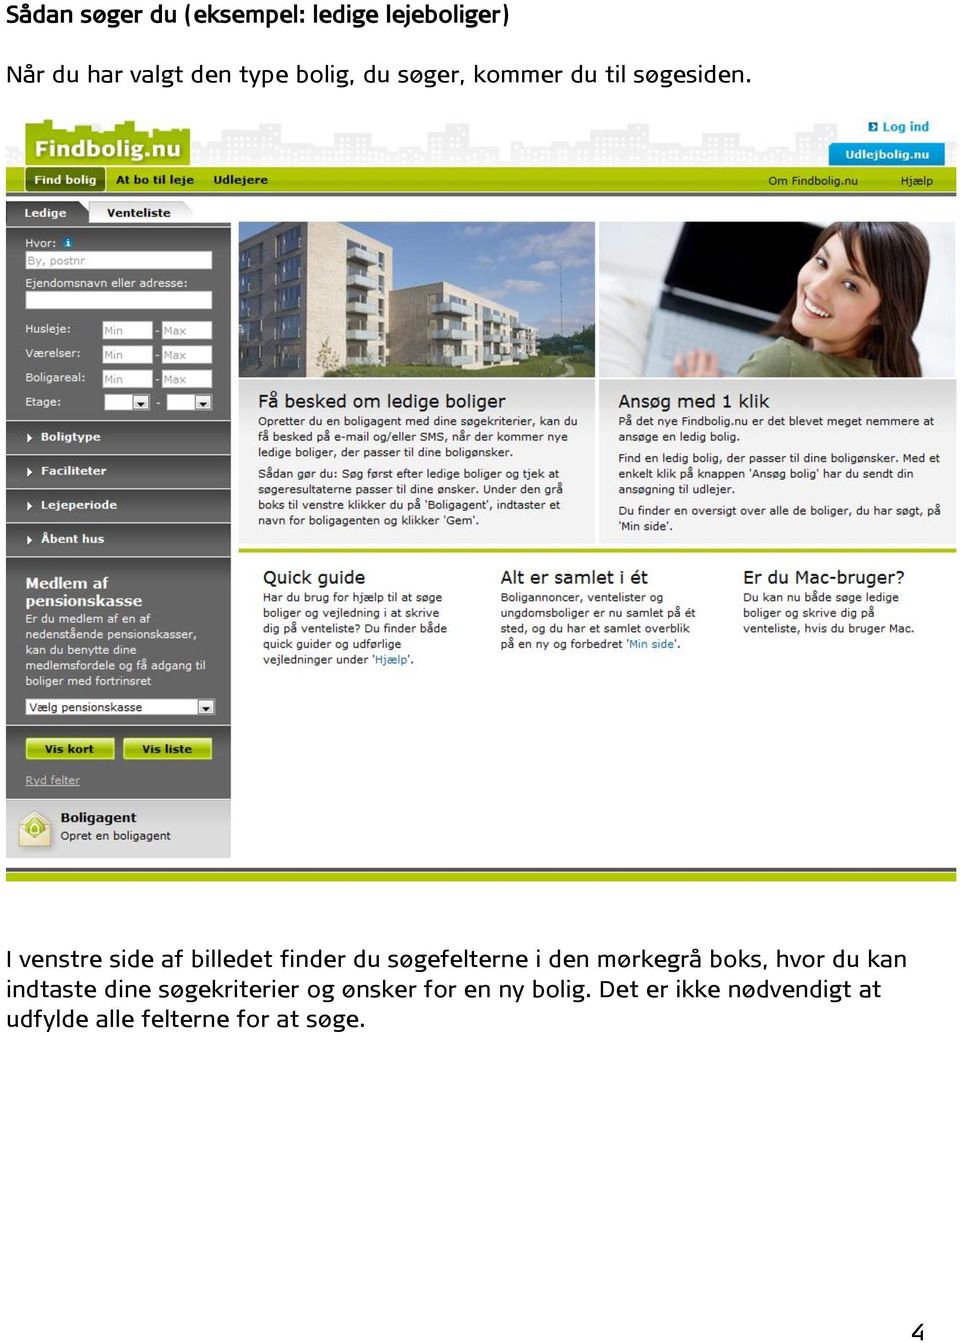 Sådan søger du boliger på Findbolig.nu - PDF Gratis download